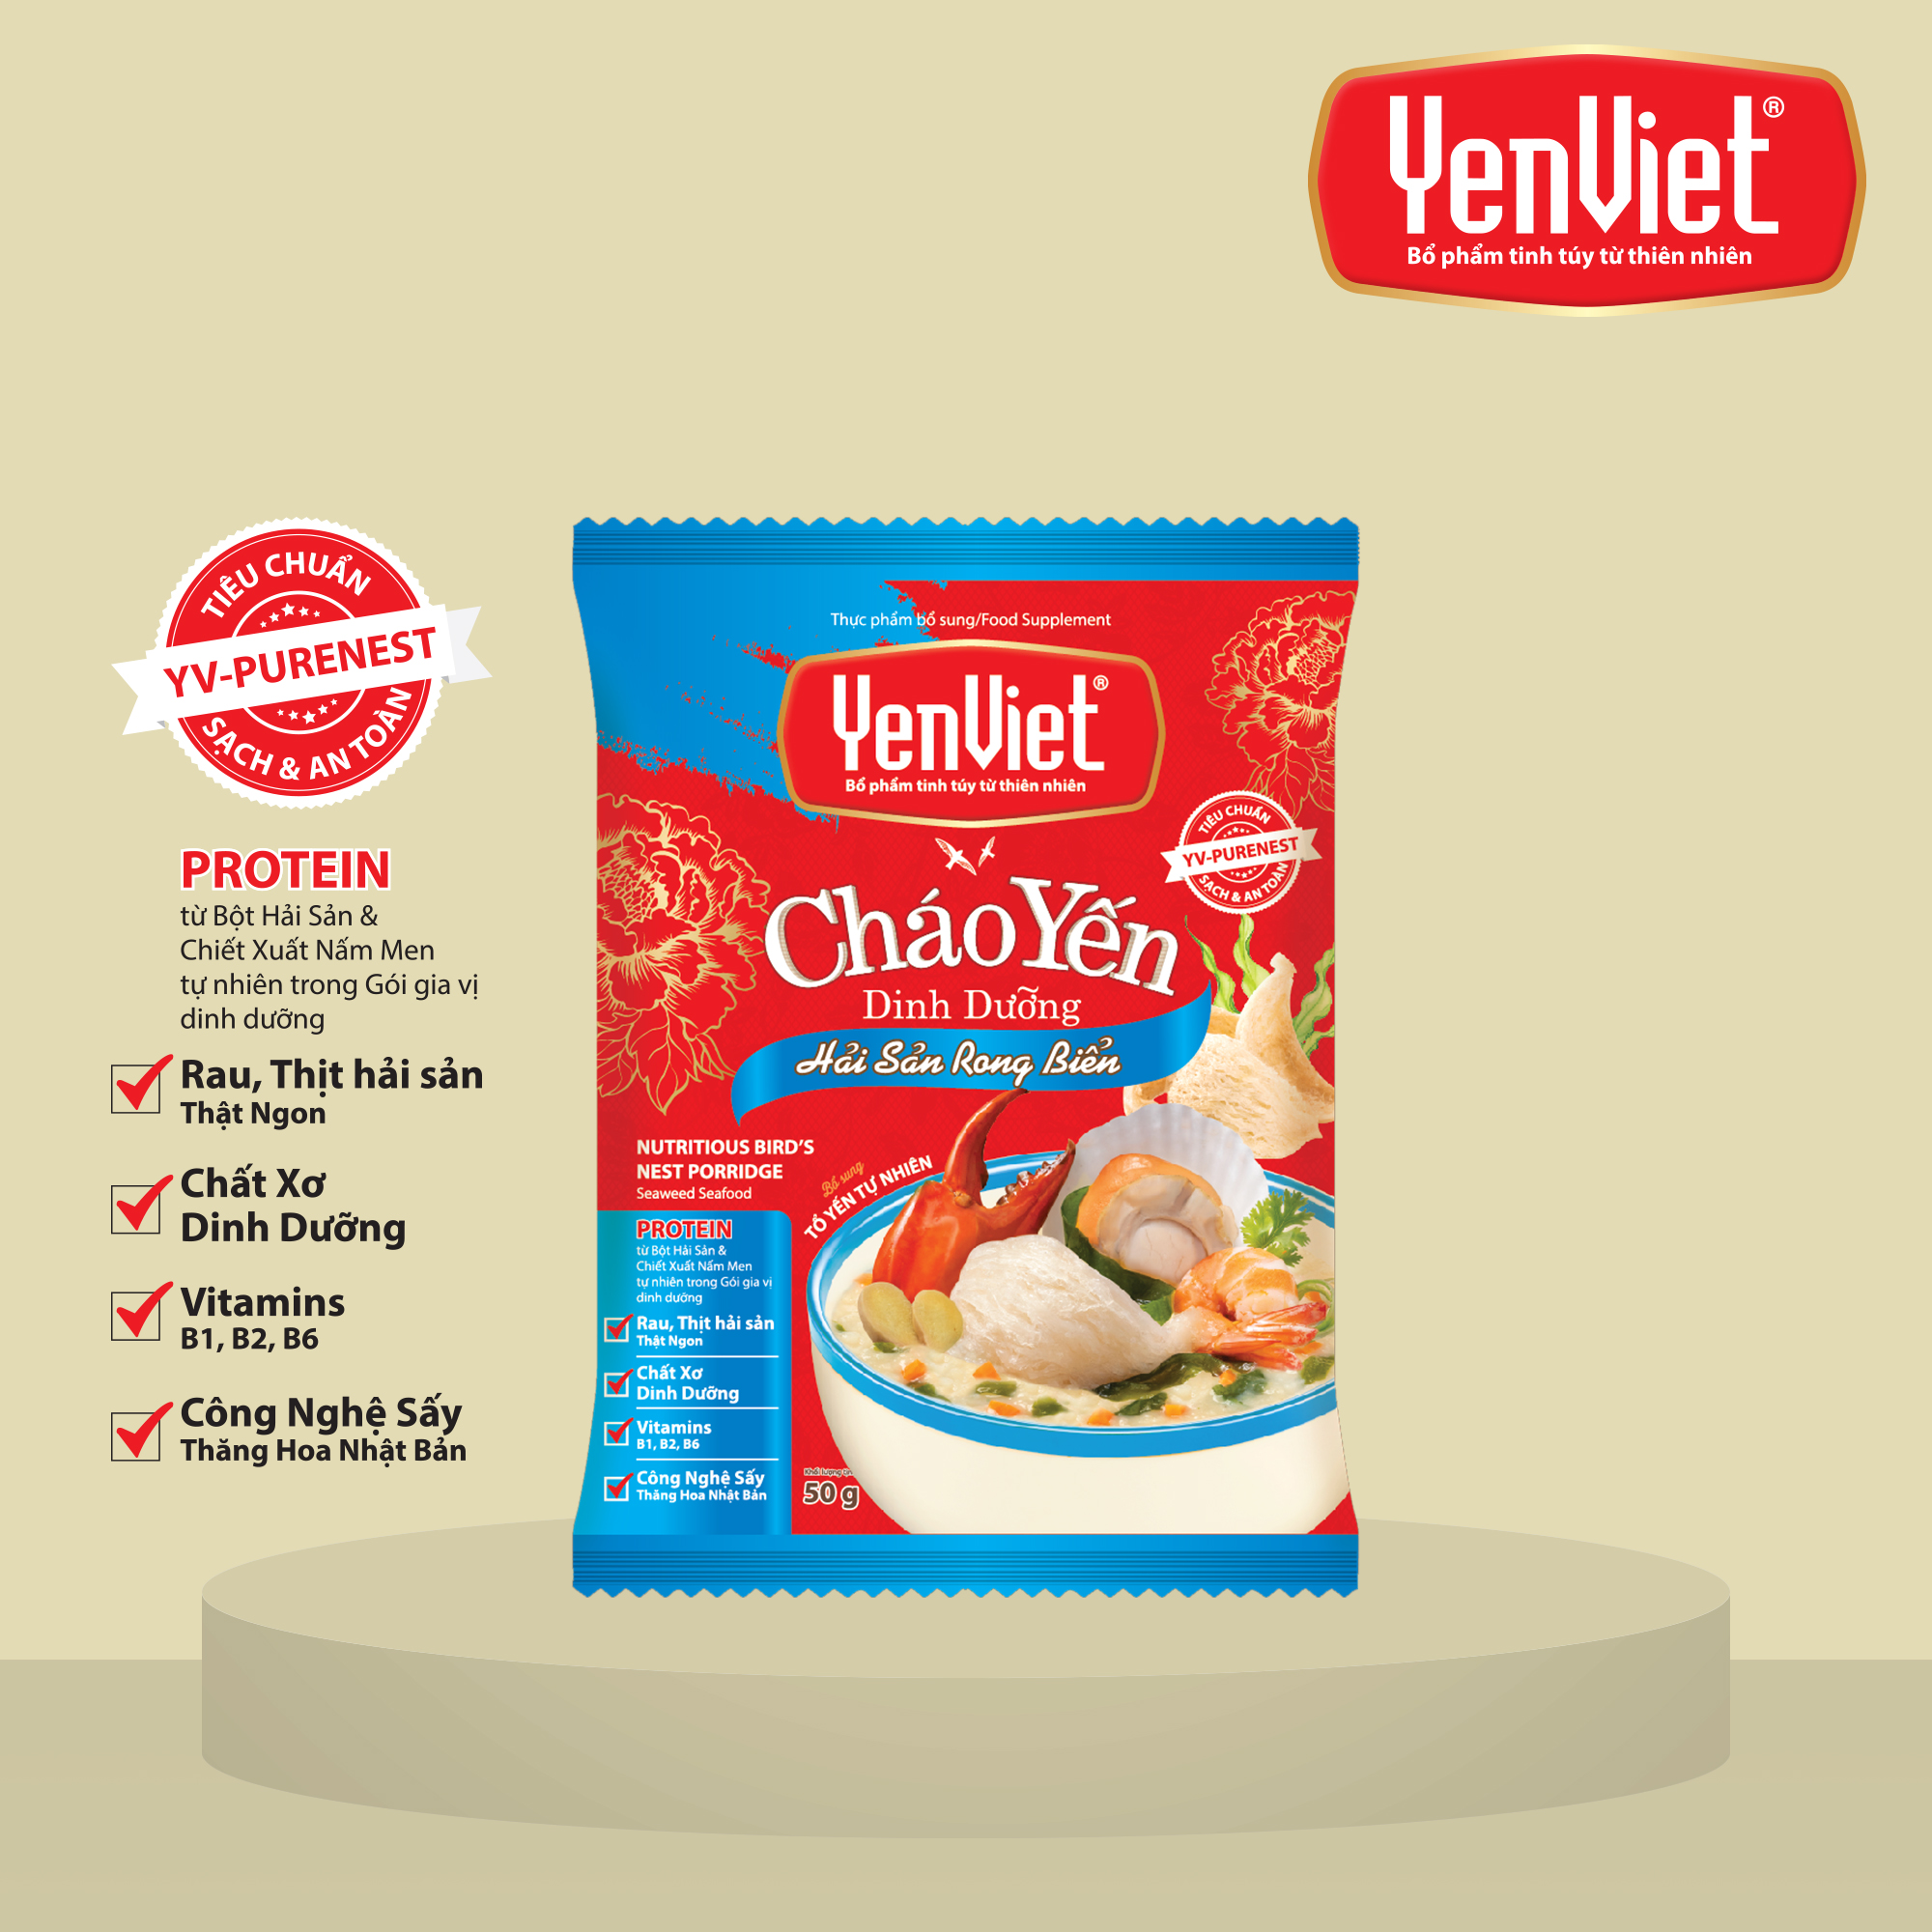 Yến Việt - Cháo yến dinh dưỡng hải sản rong biển sấy thăng hoa, bổ sung vitamin B, không bột ngọt, thùng 30 gói x 50g